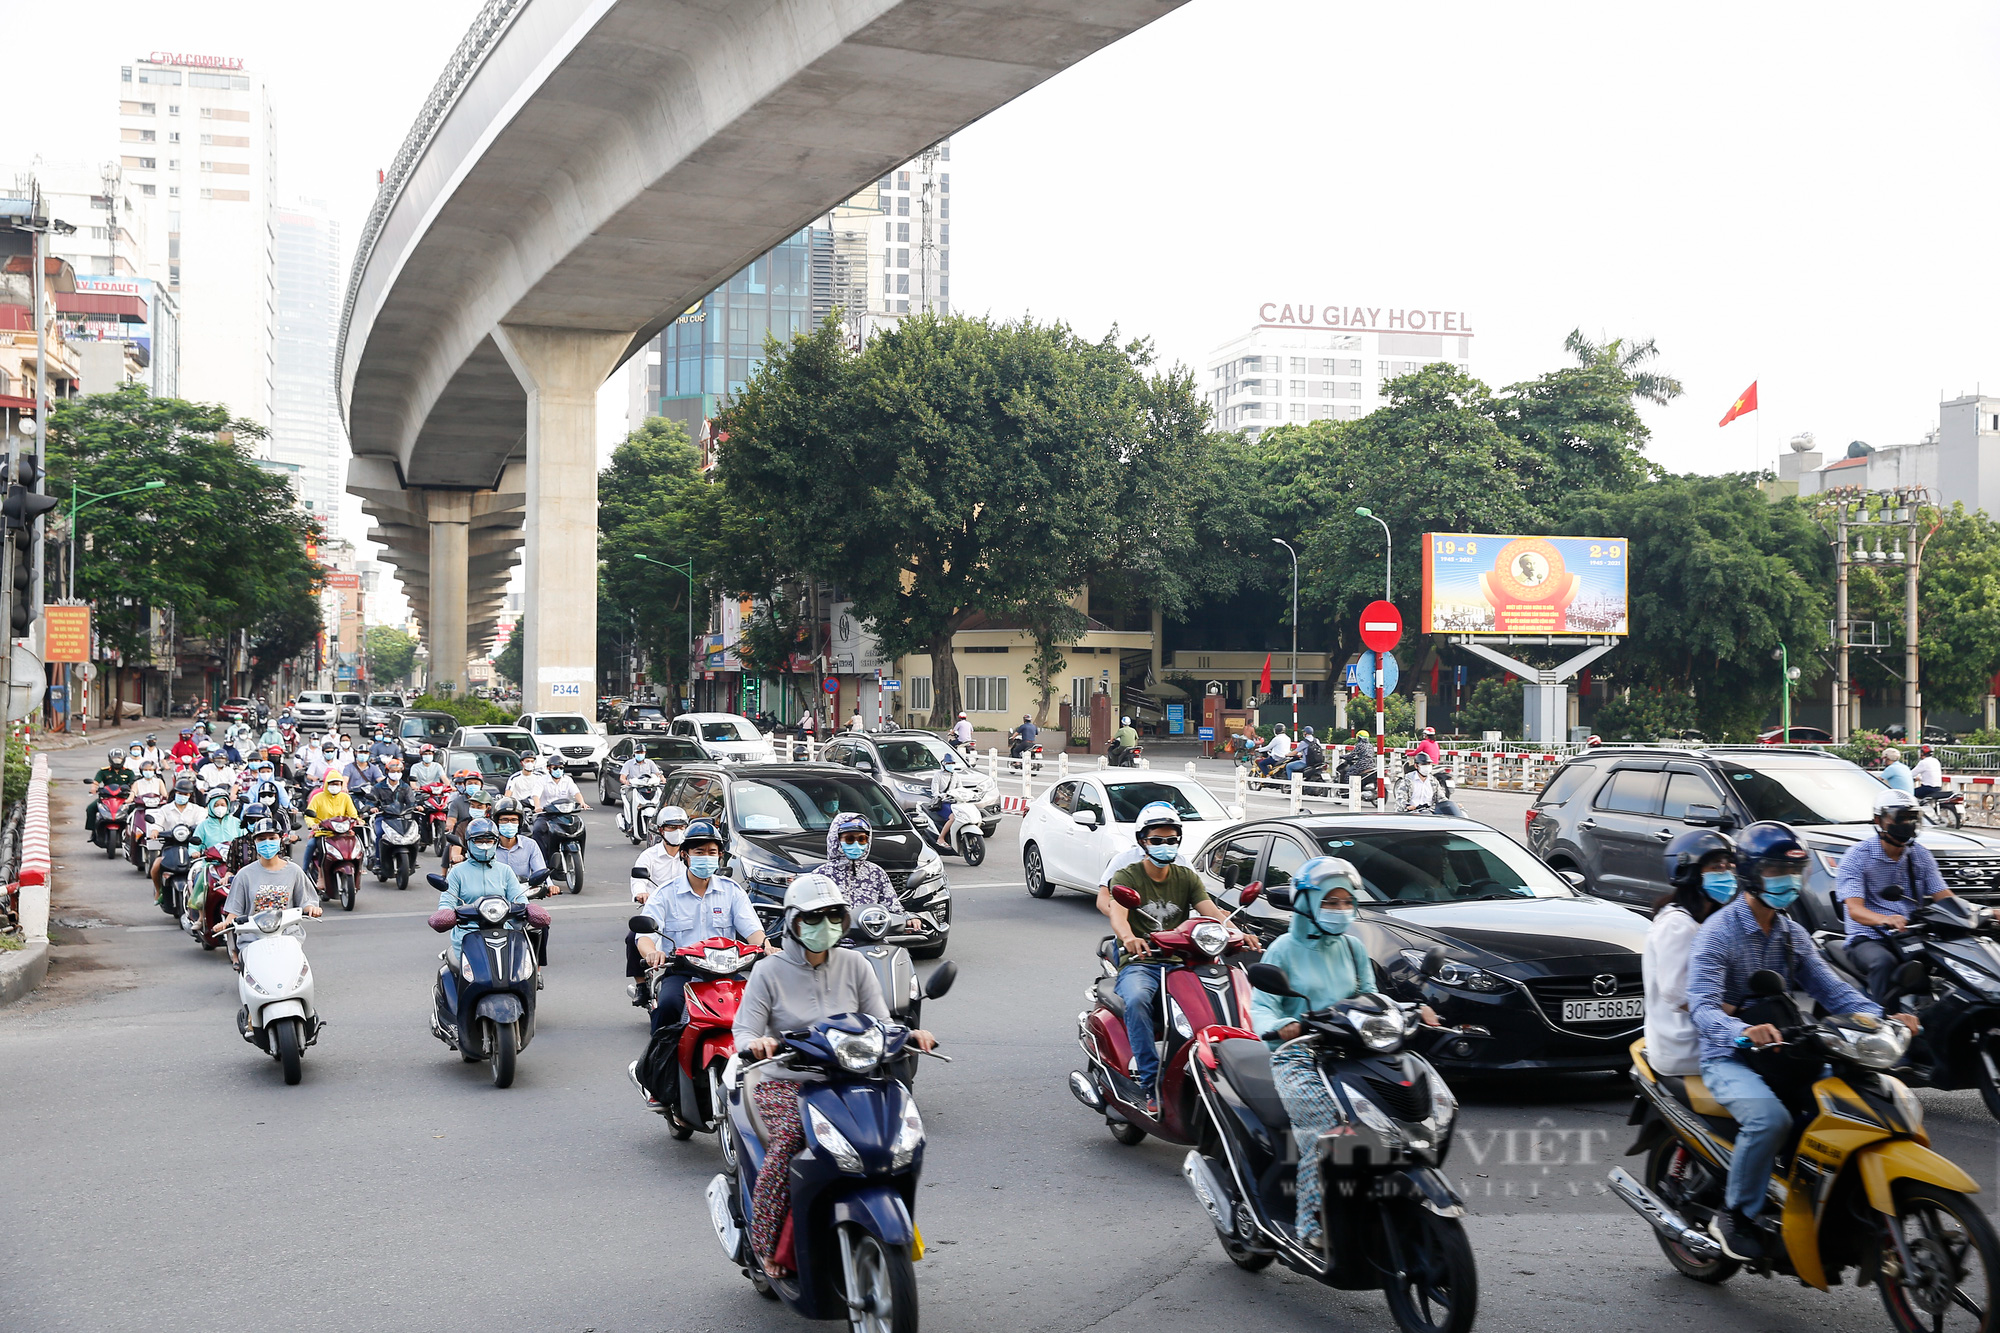 Ngã 4 đường phố Hà Nội: Với những khung cảnh lãng mạn và đầy thơ mộng, những hình ảnh về ngã 4 đường phố Hà Nội sẽ khiến bạn phải trầm trồ ngưỡng mộ. Đây chính là nơi tập trung nhiều những con phố đẹp nhất của thủ đô, và đem lại cho bạn nhiều trải nghiệm tuyệt vời khi ở đây.